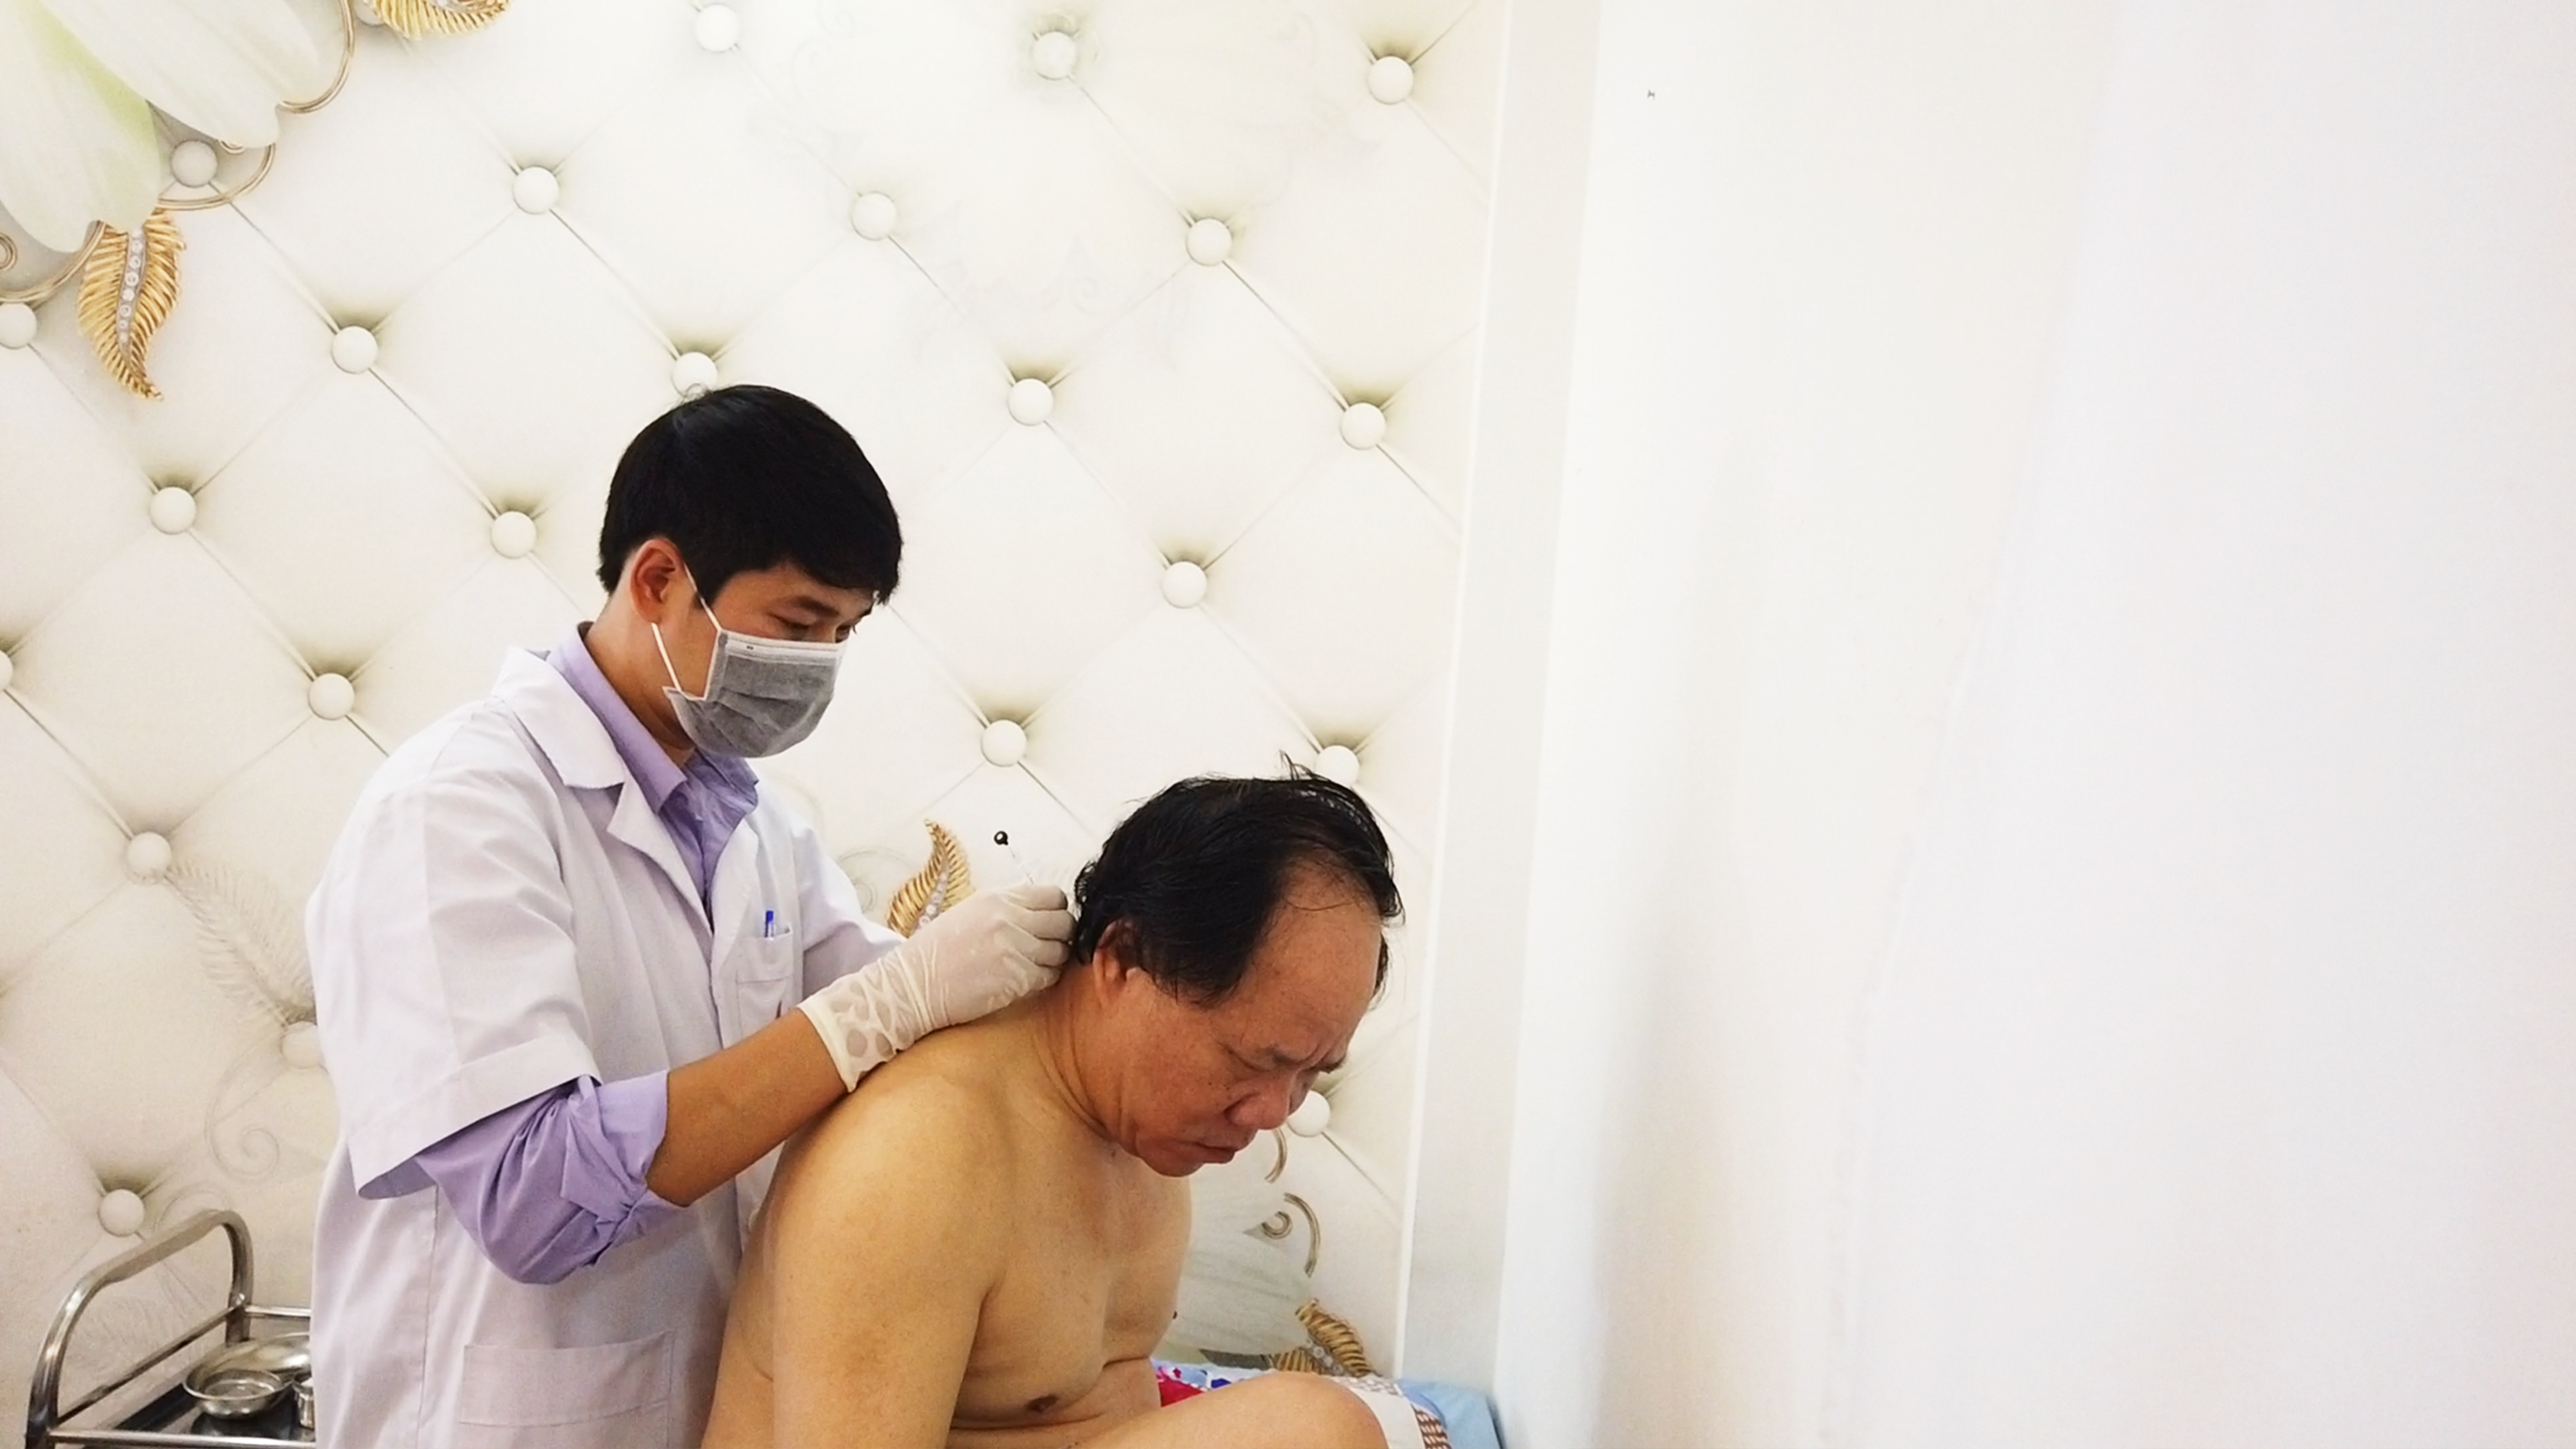 Bác sĩ chuyên khoa I Nguyễn Minh Phương đang cấy chỉ cho bệnh nhân tại chi nhánh Cần Thơ 